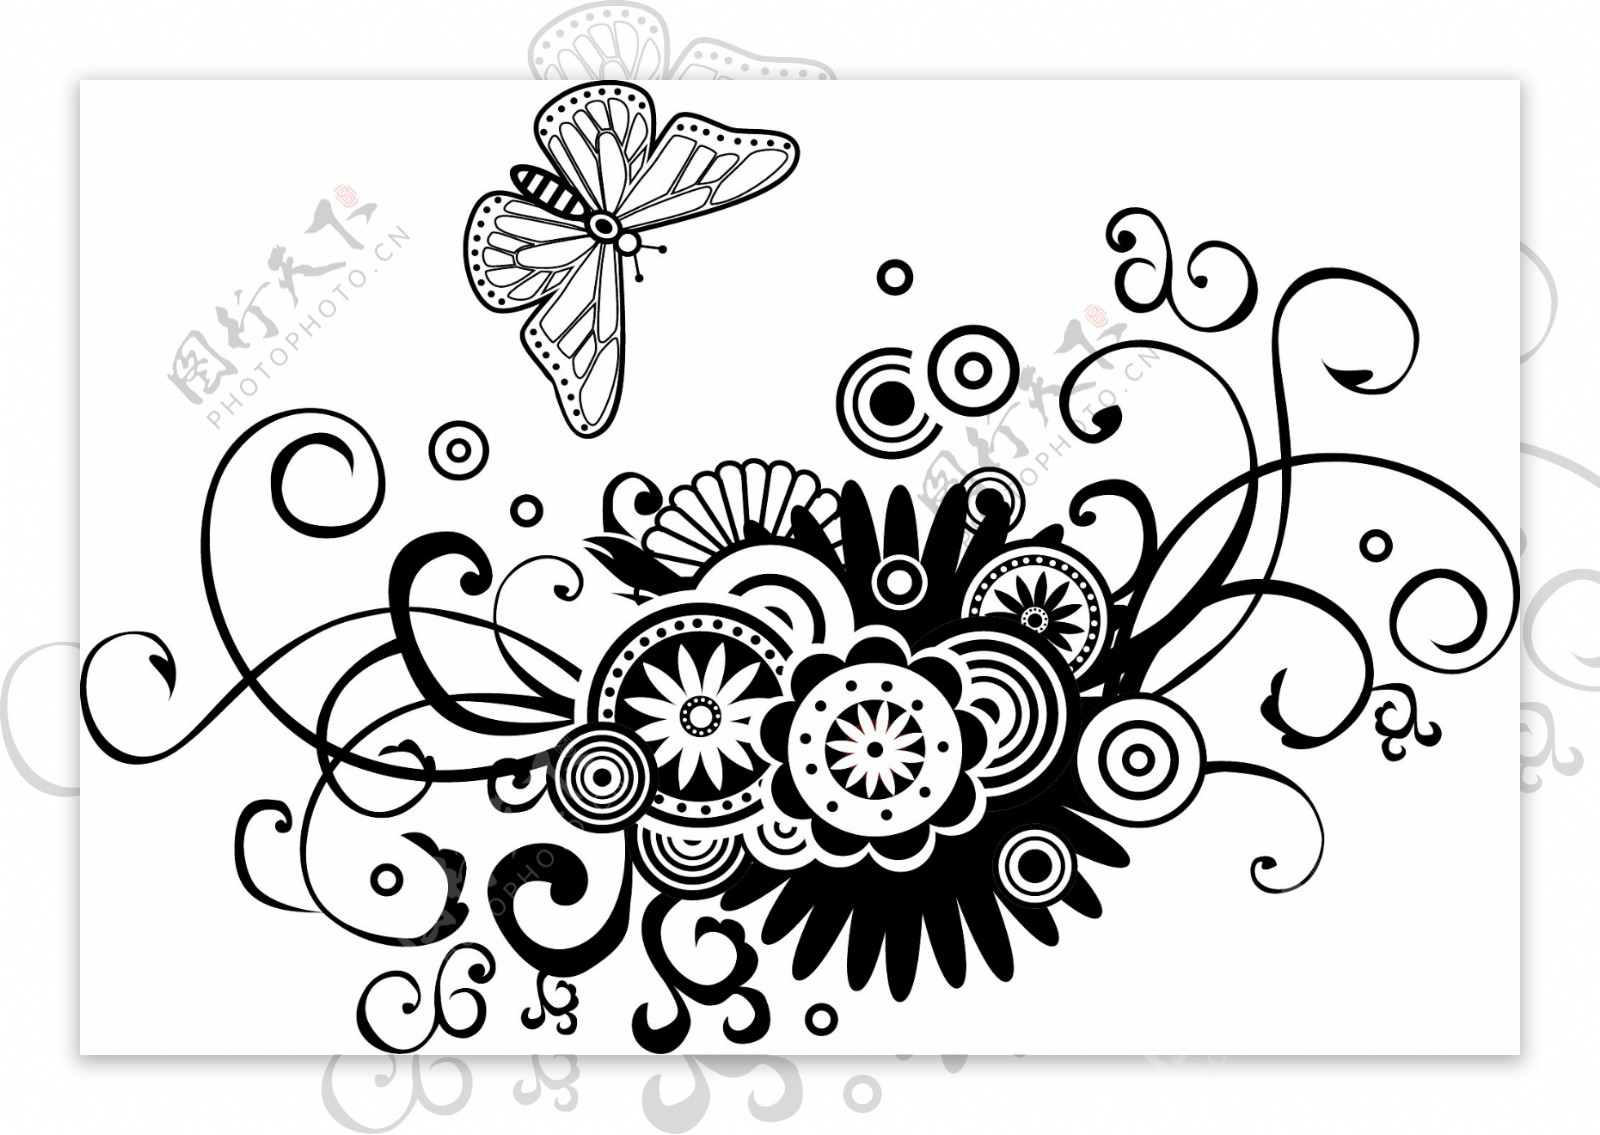 手绘哥特式花卉矢量素材装饰图案